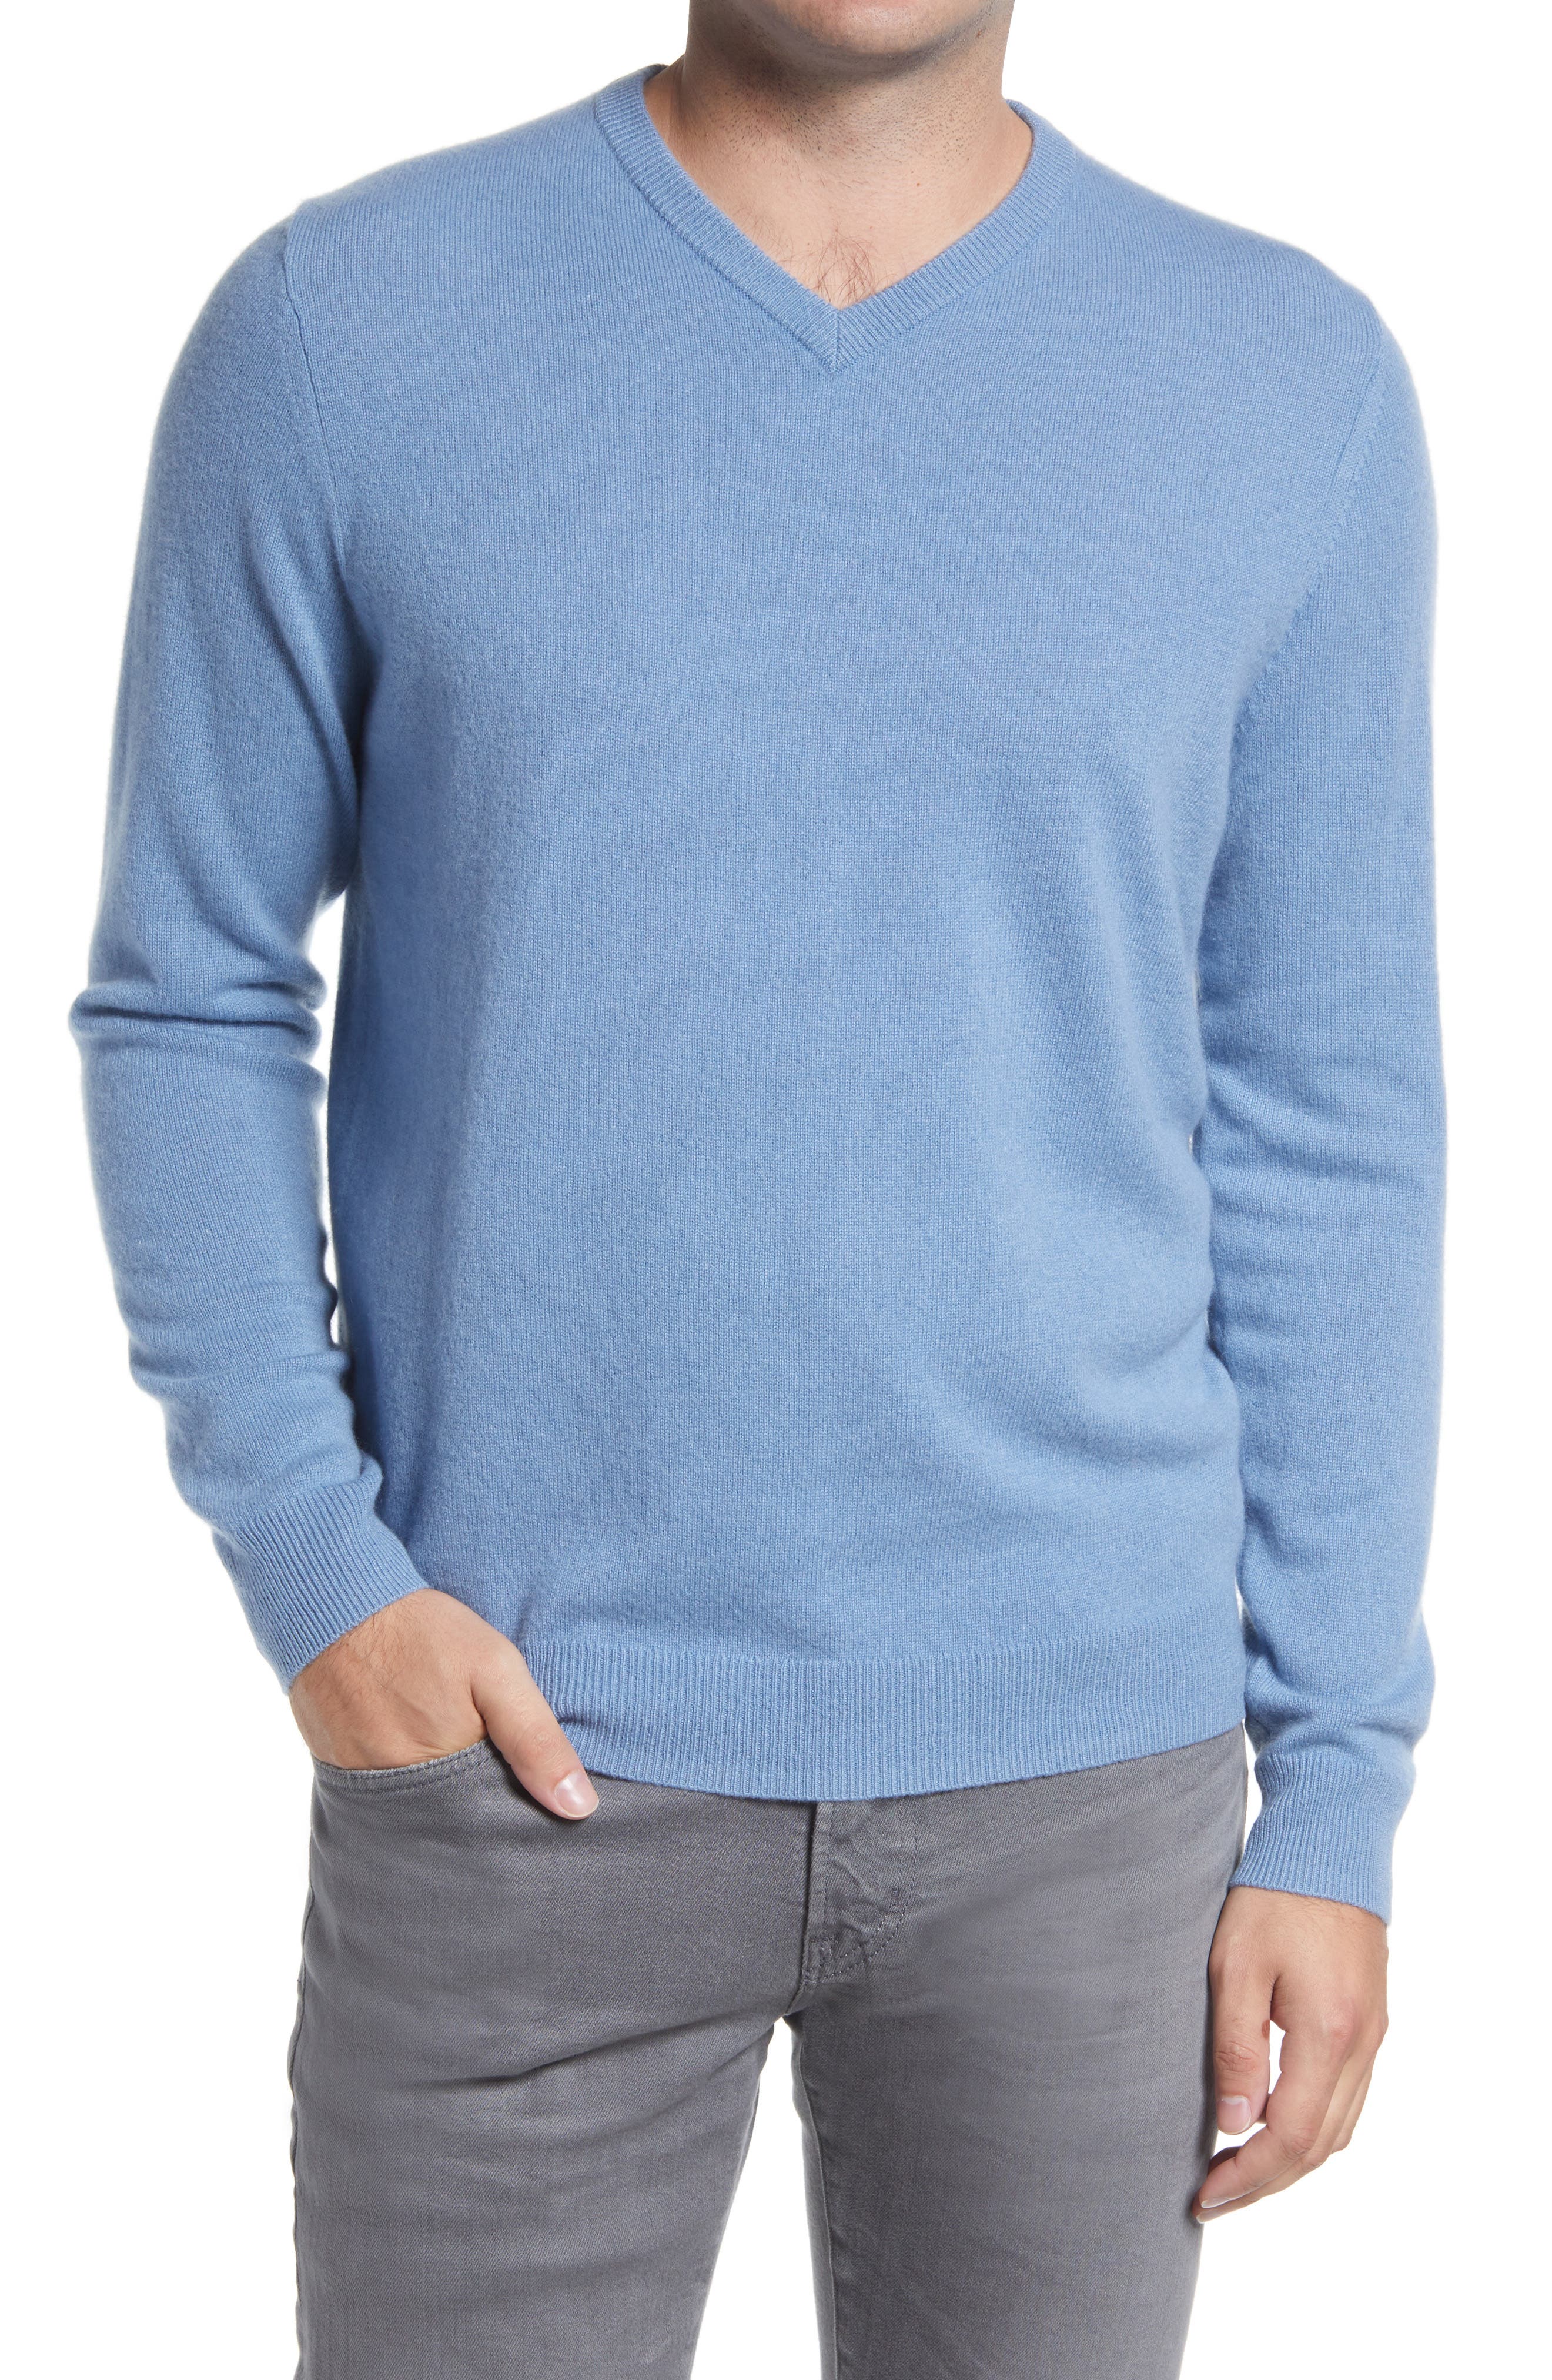 Vince Men Sweater Pullover Shirt Crewneck 100% Linen Striped Blue Sizes M XL L 